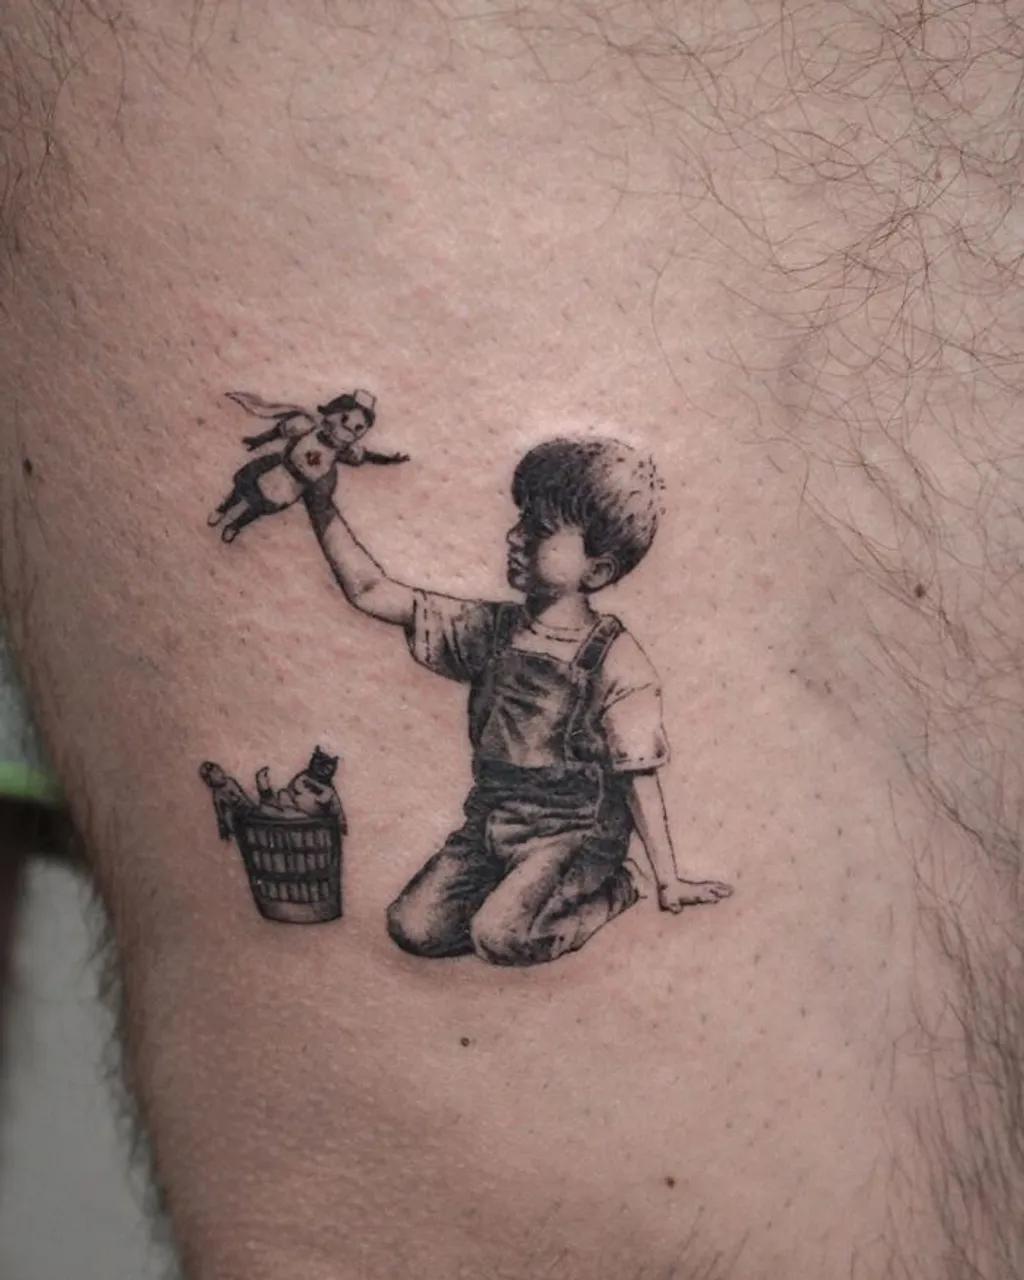 Covid-19 tetovaže postale hit među mladima, ovo su neke od najkreativnijih